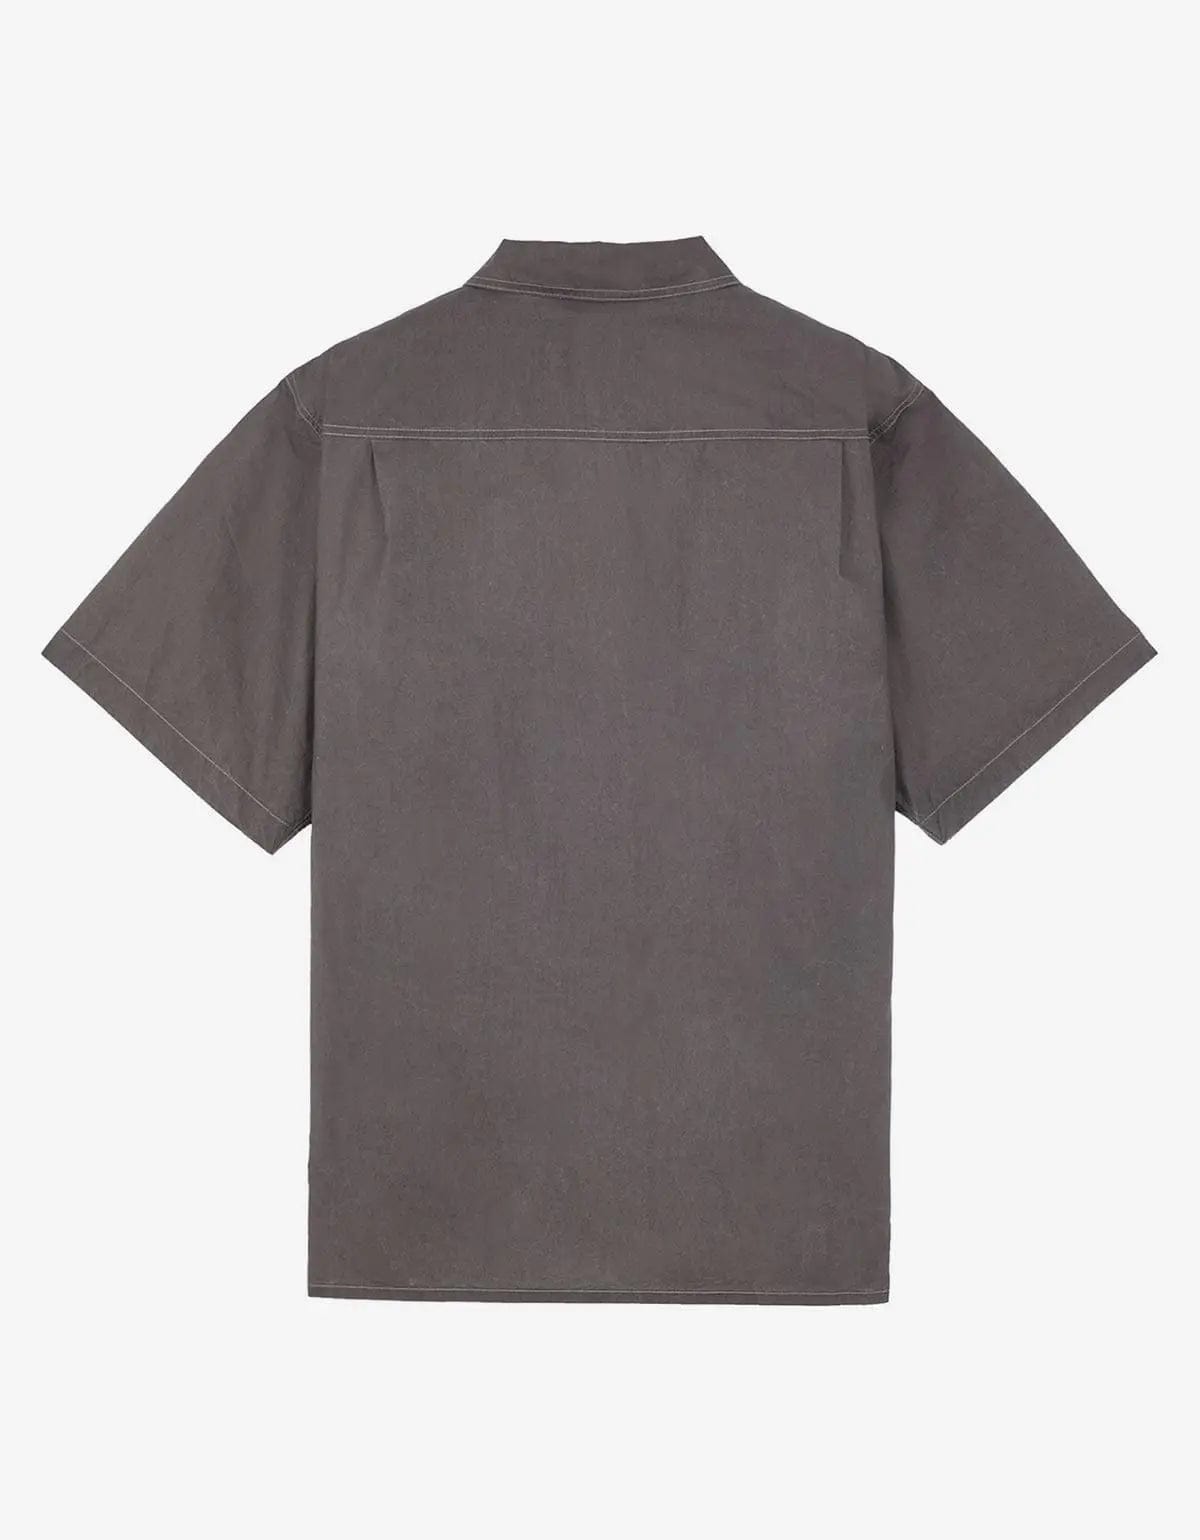 Stone Island Stone Island Grey Pleated Short Sleeve Overshirt